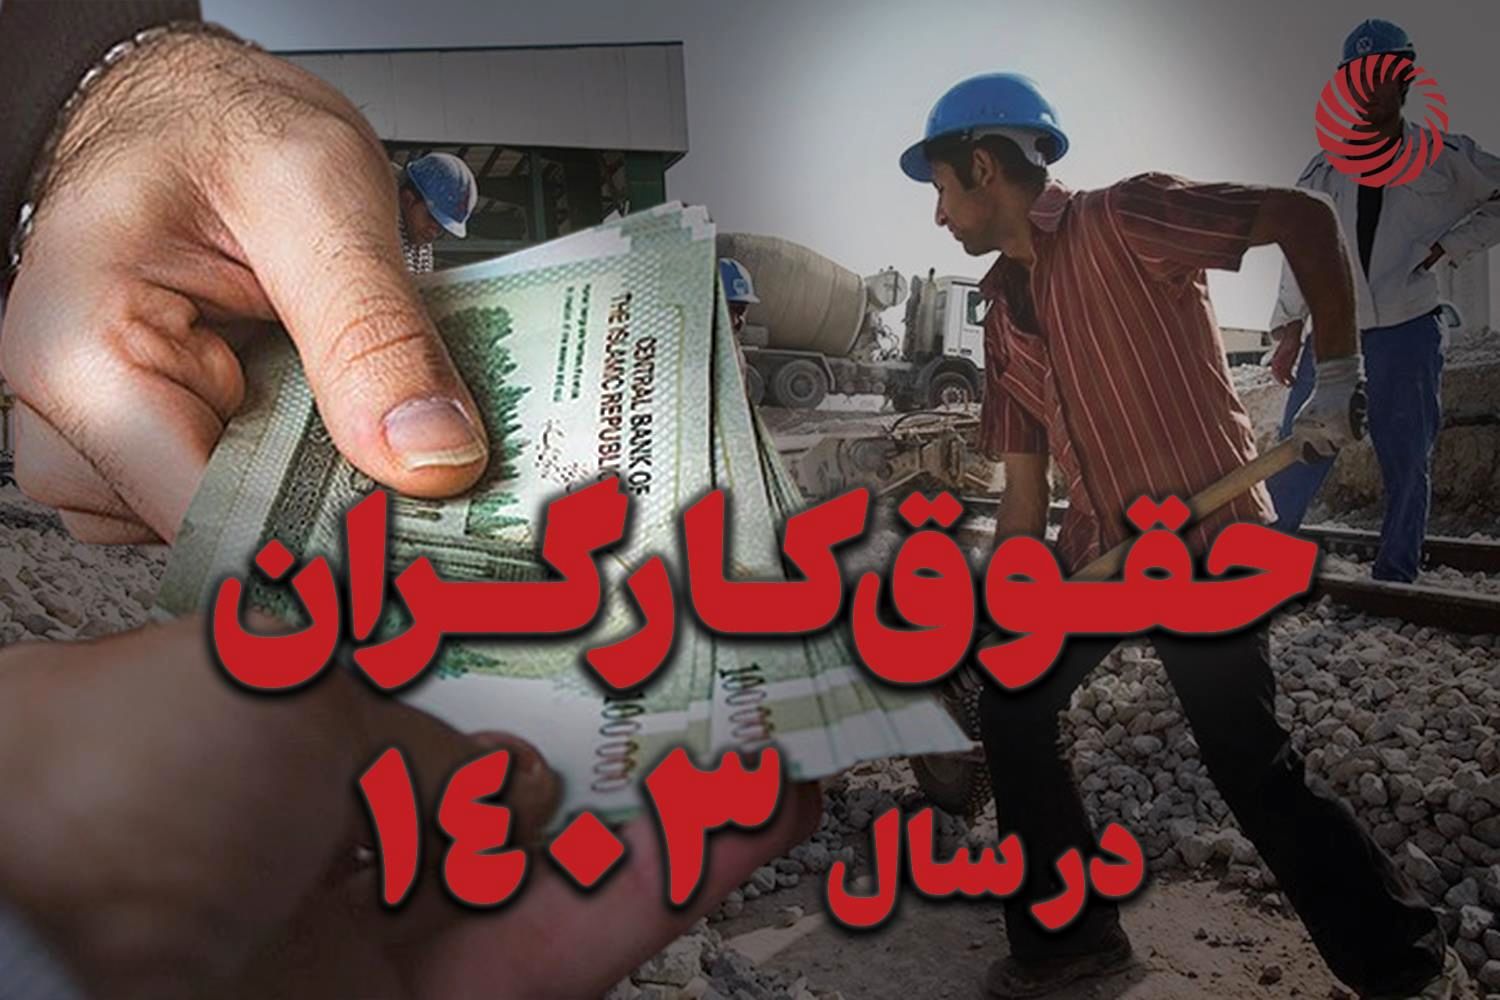 عقب‌ نشینی وزارت کار در برابر کارگران | افزایش حقوق کارگران در خرداد ماه  افزایش می یابد؟